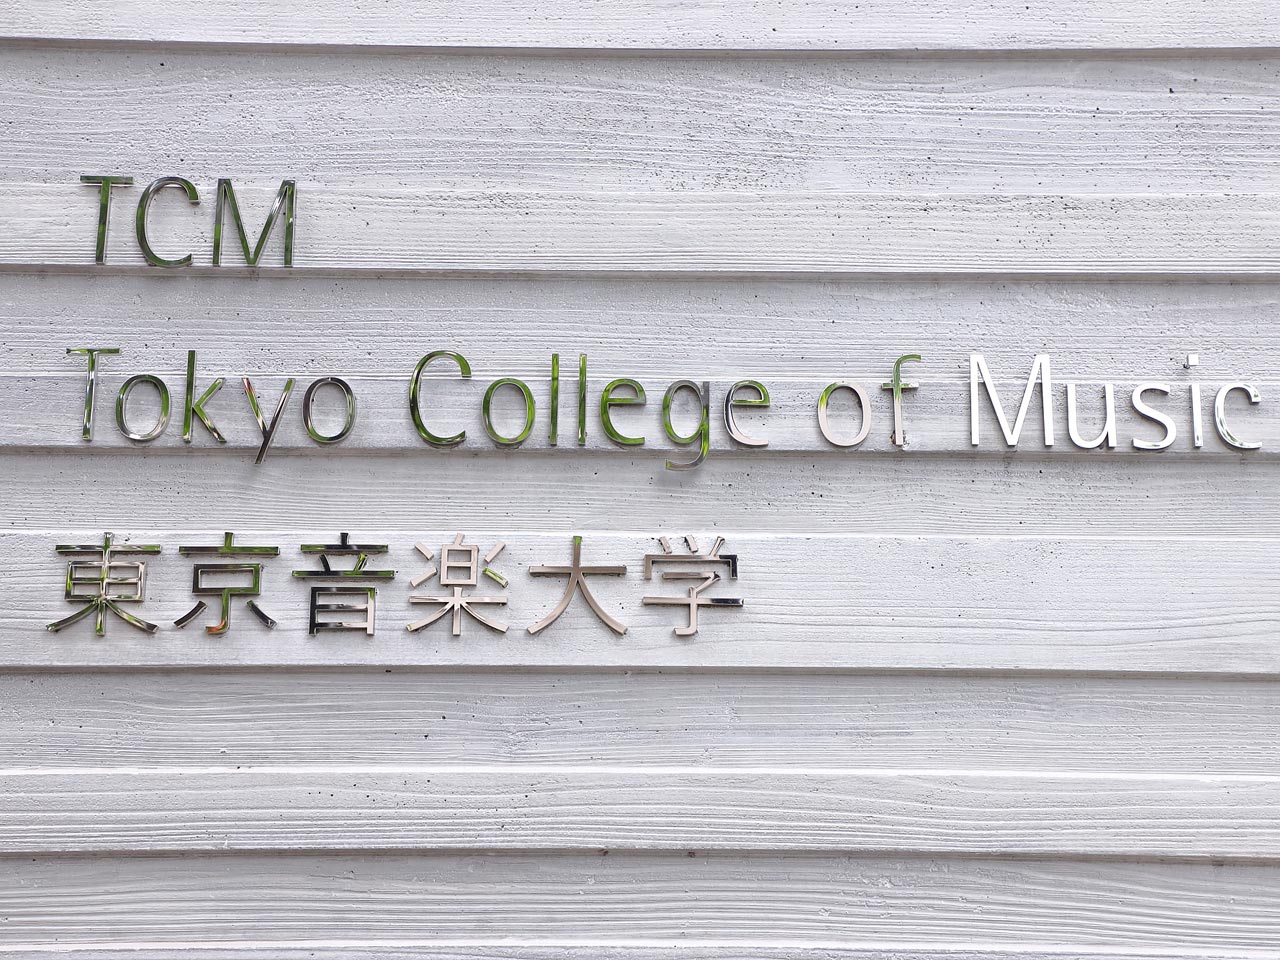 日本現存の私立音楽大学で最古の歴史を誇る、東京音楽大学。しかし伝統だけでなく、海外や時代の変化への鋭い着眼点も魅力だ。